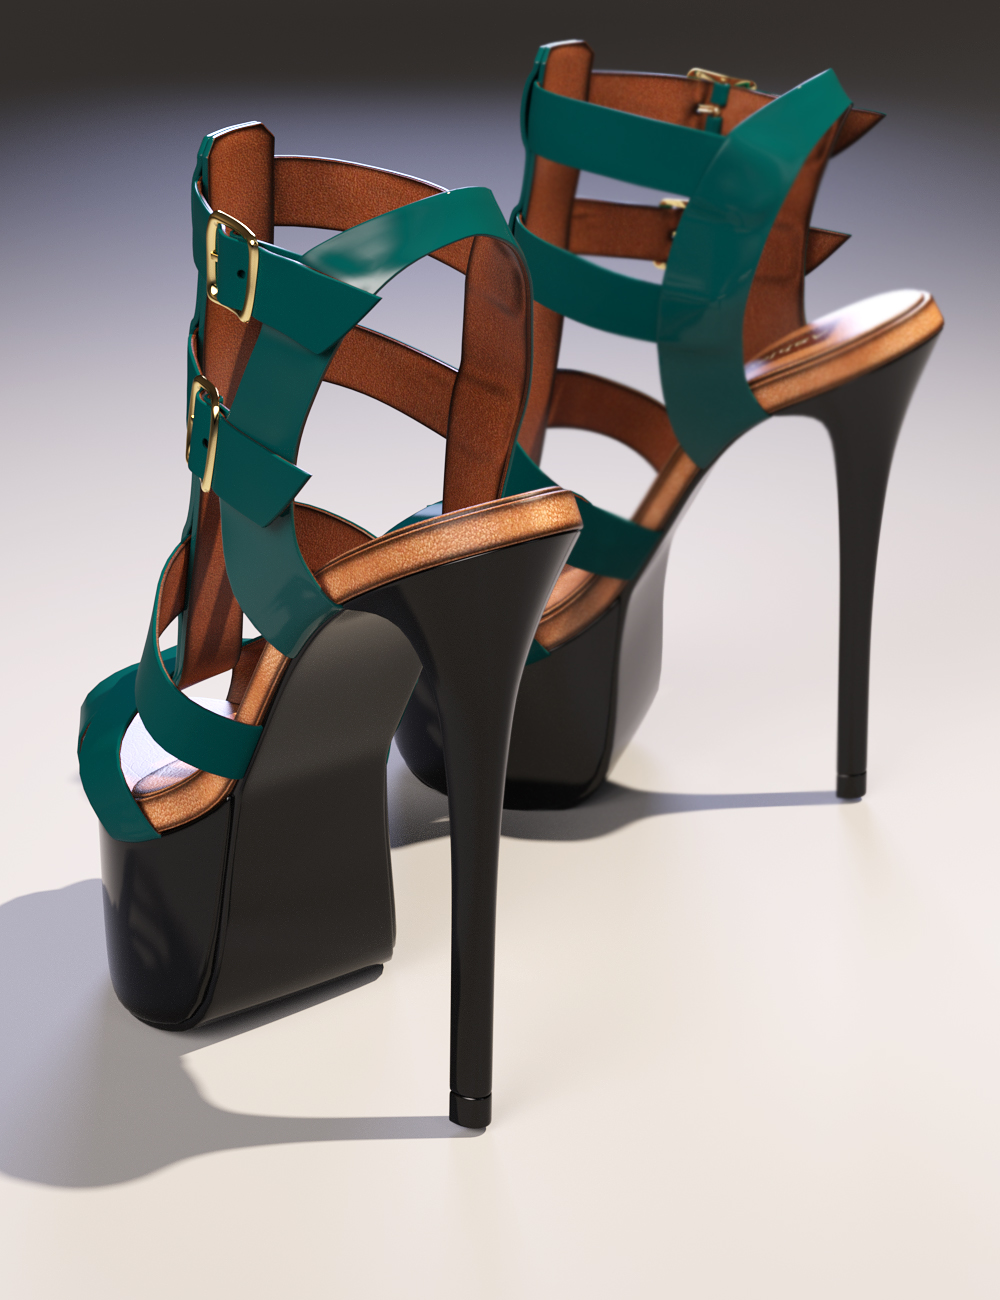 Ashley High Heels Genesis 3 Female(s) by: 3DSublimeProductionsoutoftouchArryn, 3D Models by Daz 3D